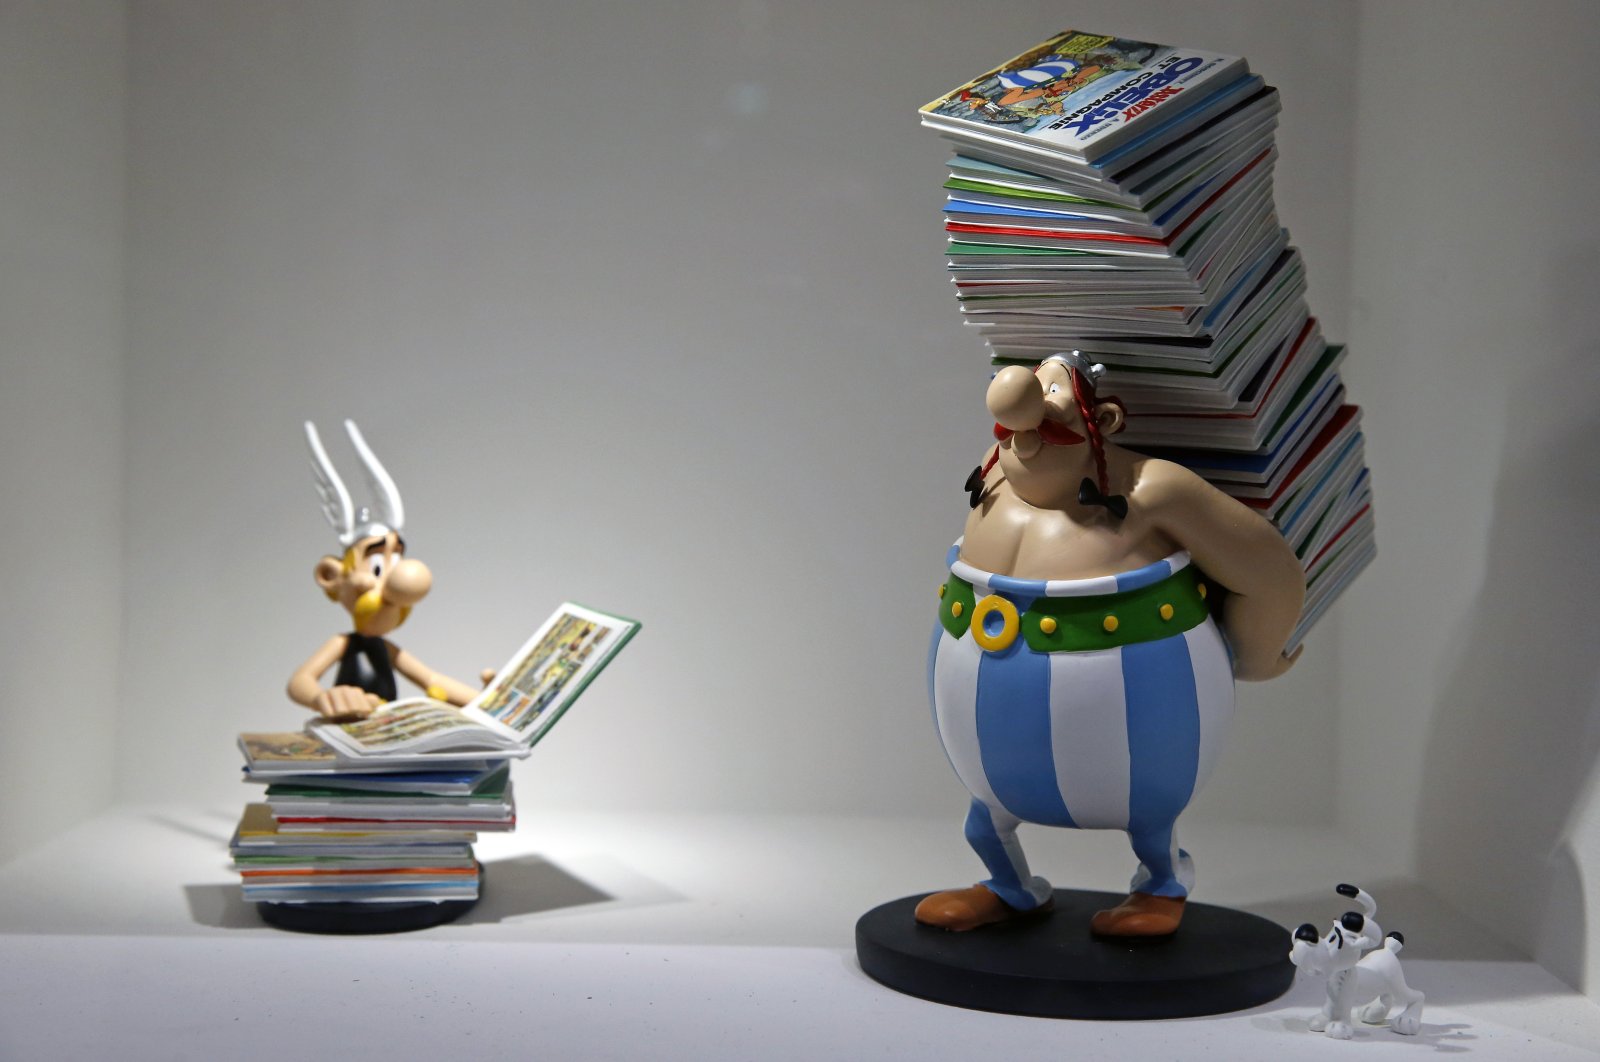 Menyelamatkan sinema Prancis: Bisakah ramuan ajaib Asterix bekerja?